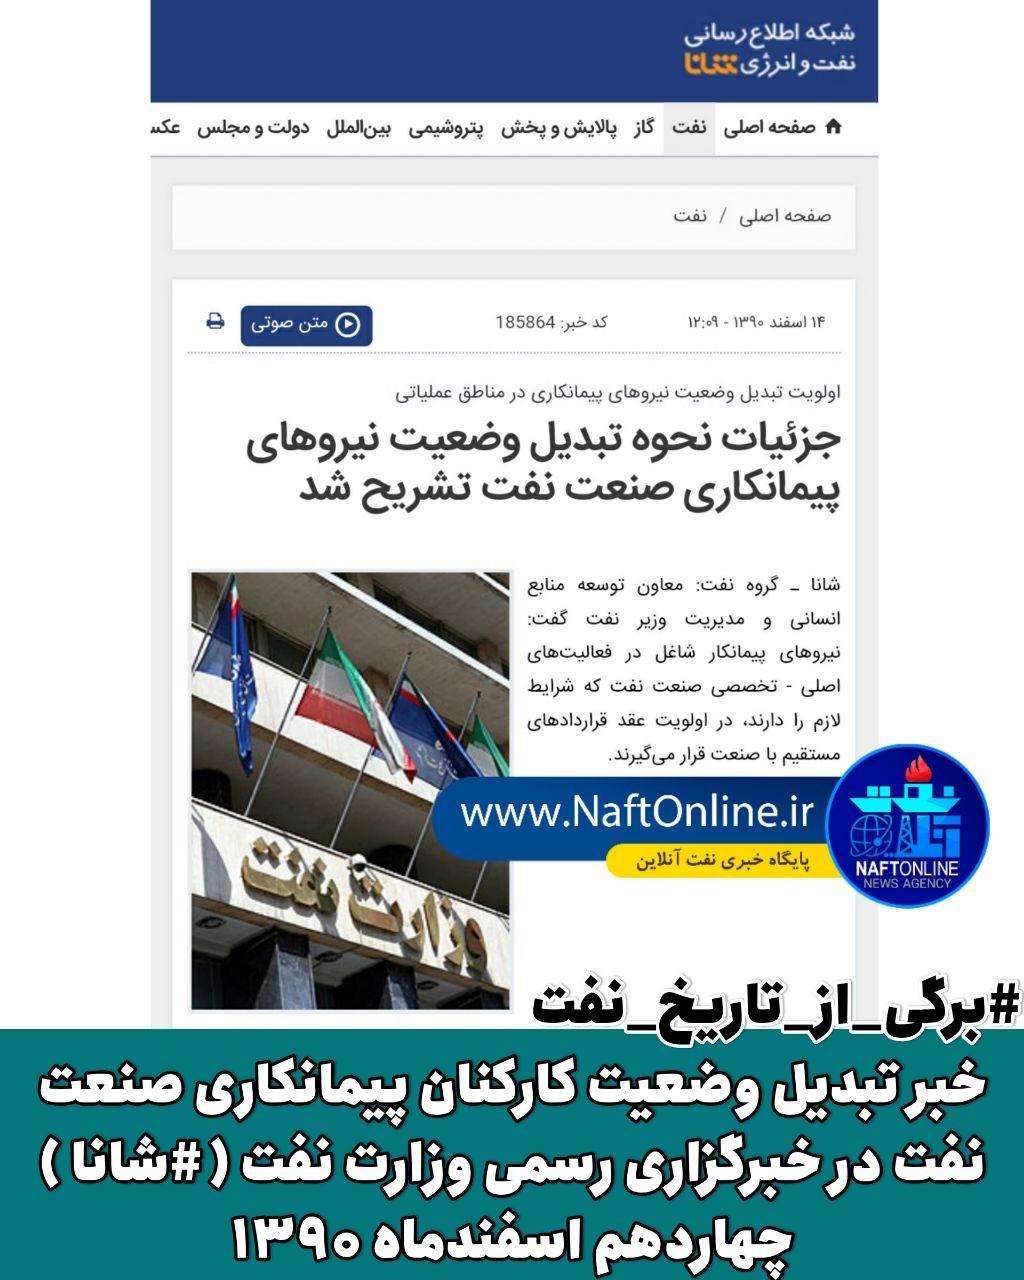 خبر تبدیل وضعیت کارکنان پیمانکاری نفت در خبرگزاری رسمی وزارت نفت